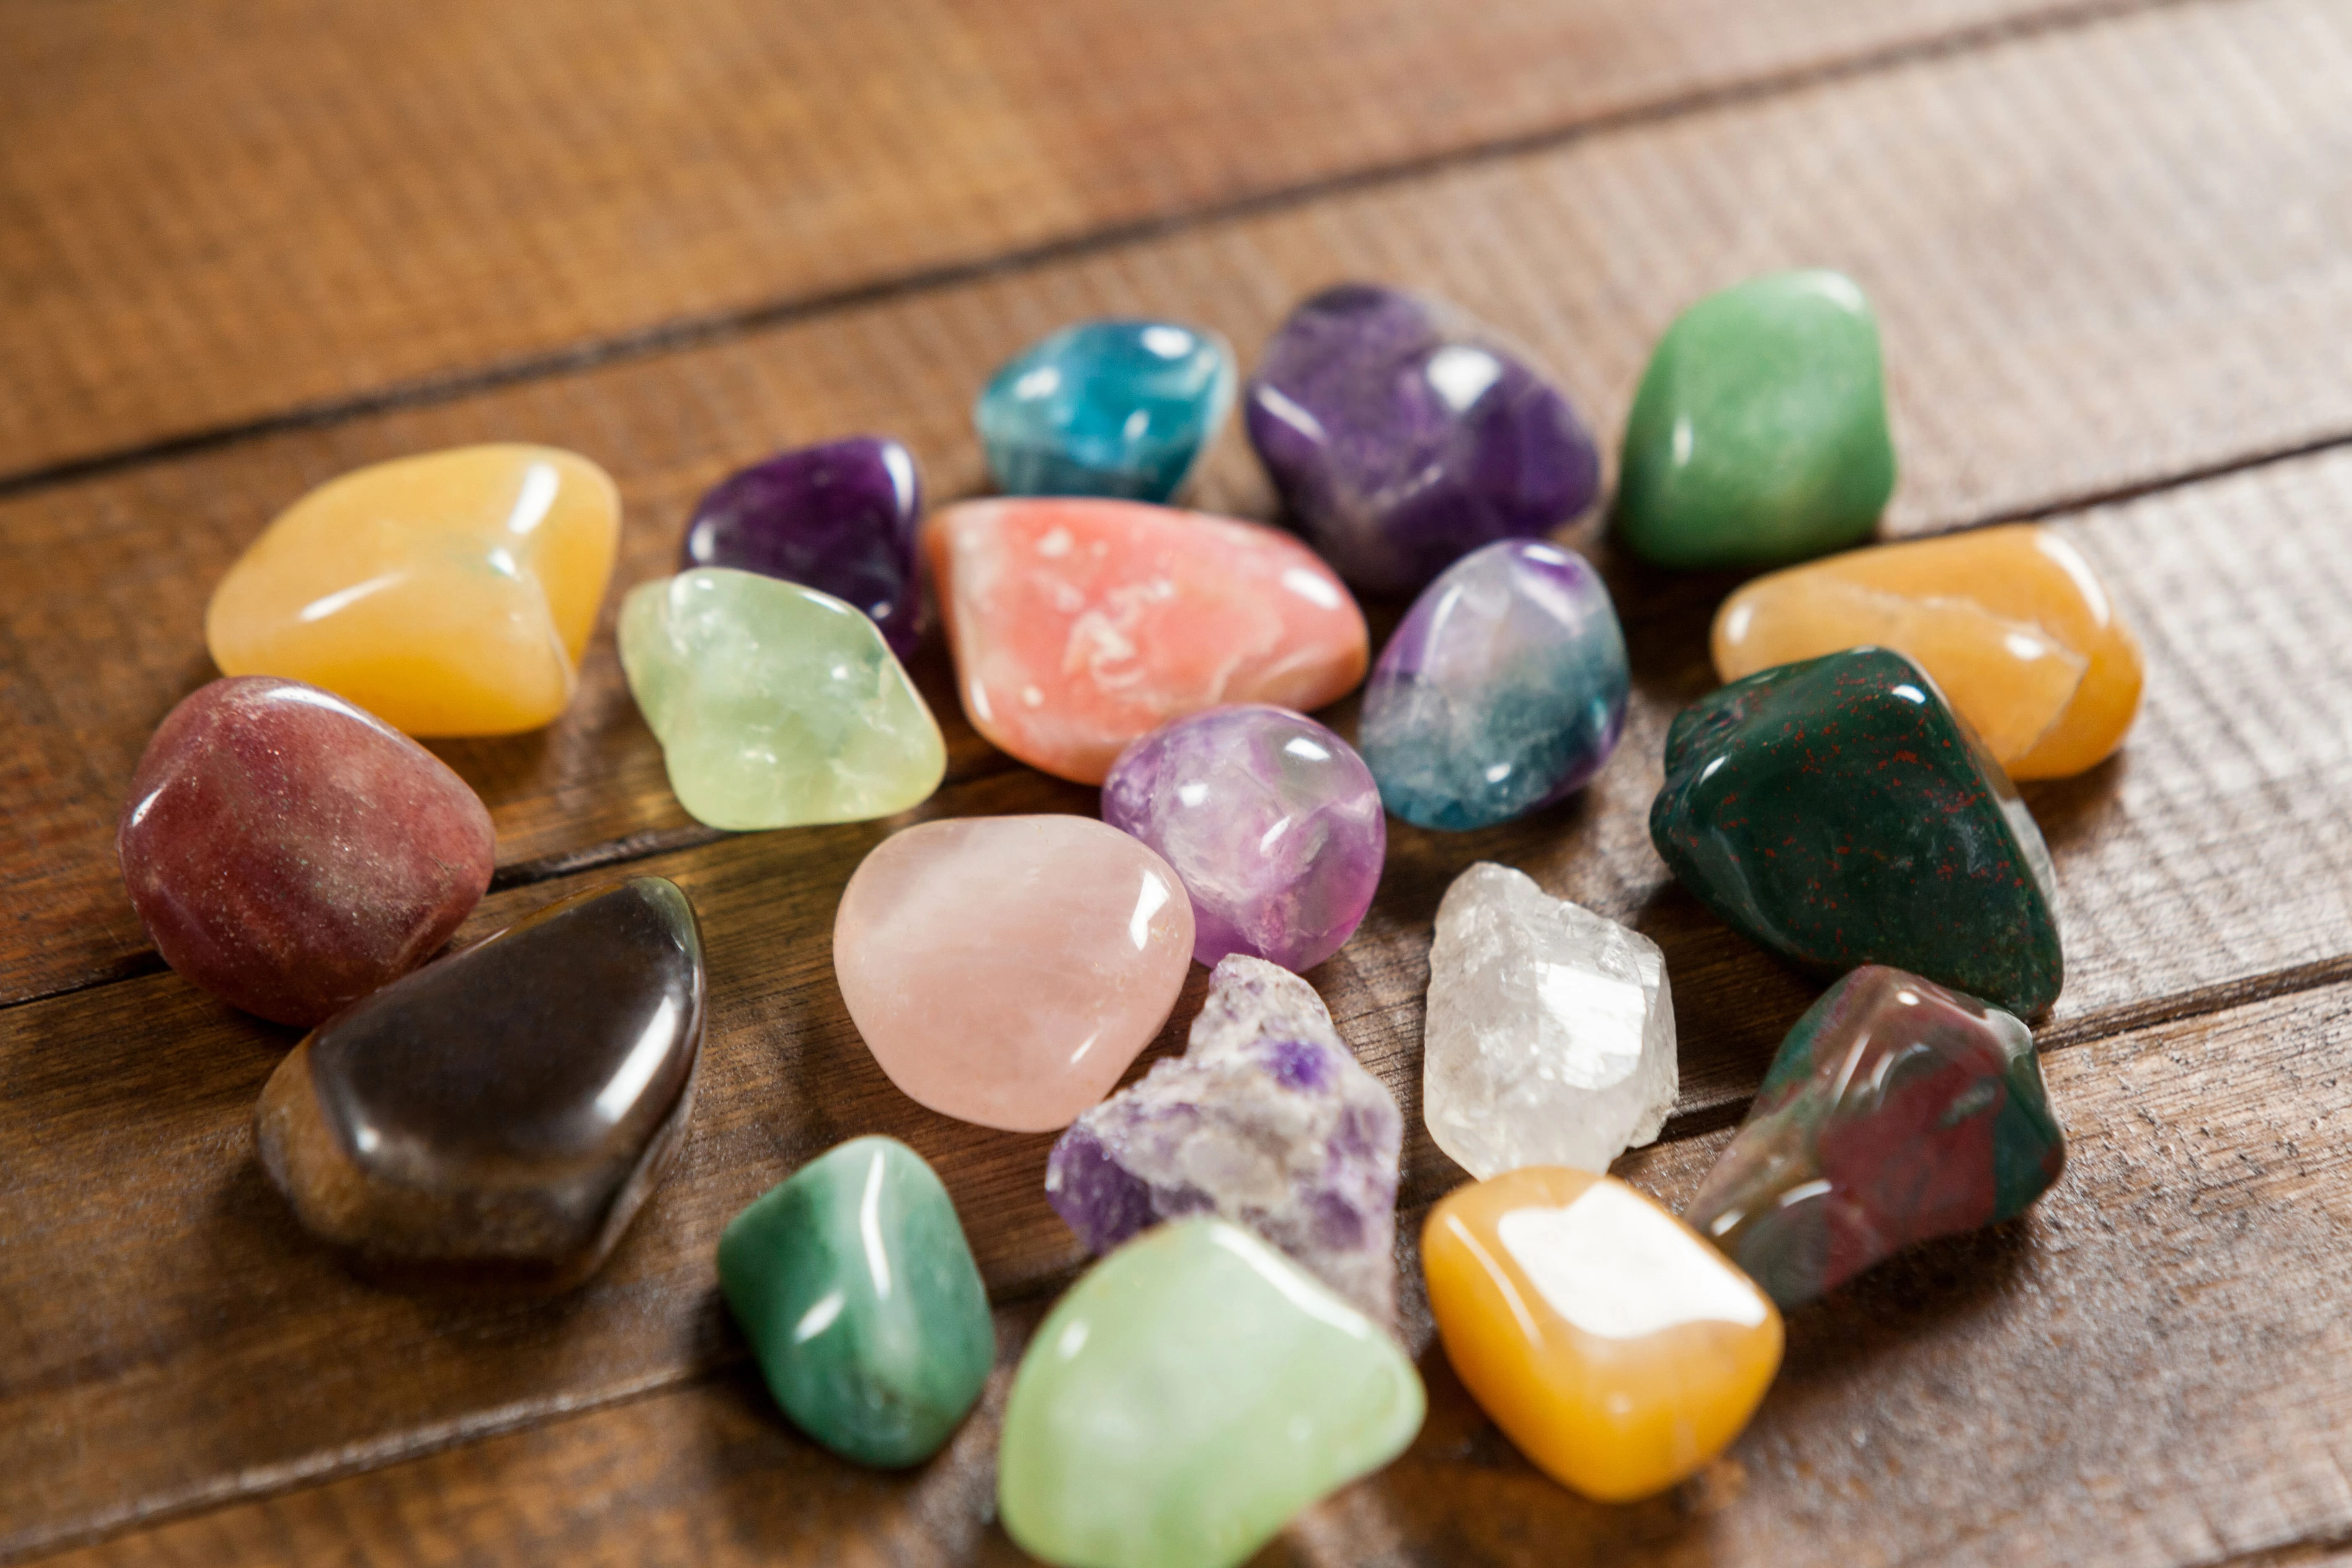 Számos különböző színű, különböző típusú természetes kő, amelyek hatással vannak lelki és egészségi állapotunkra